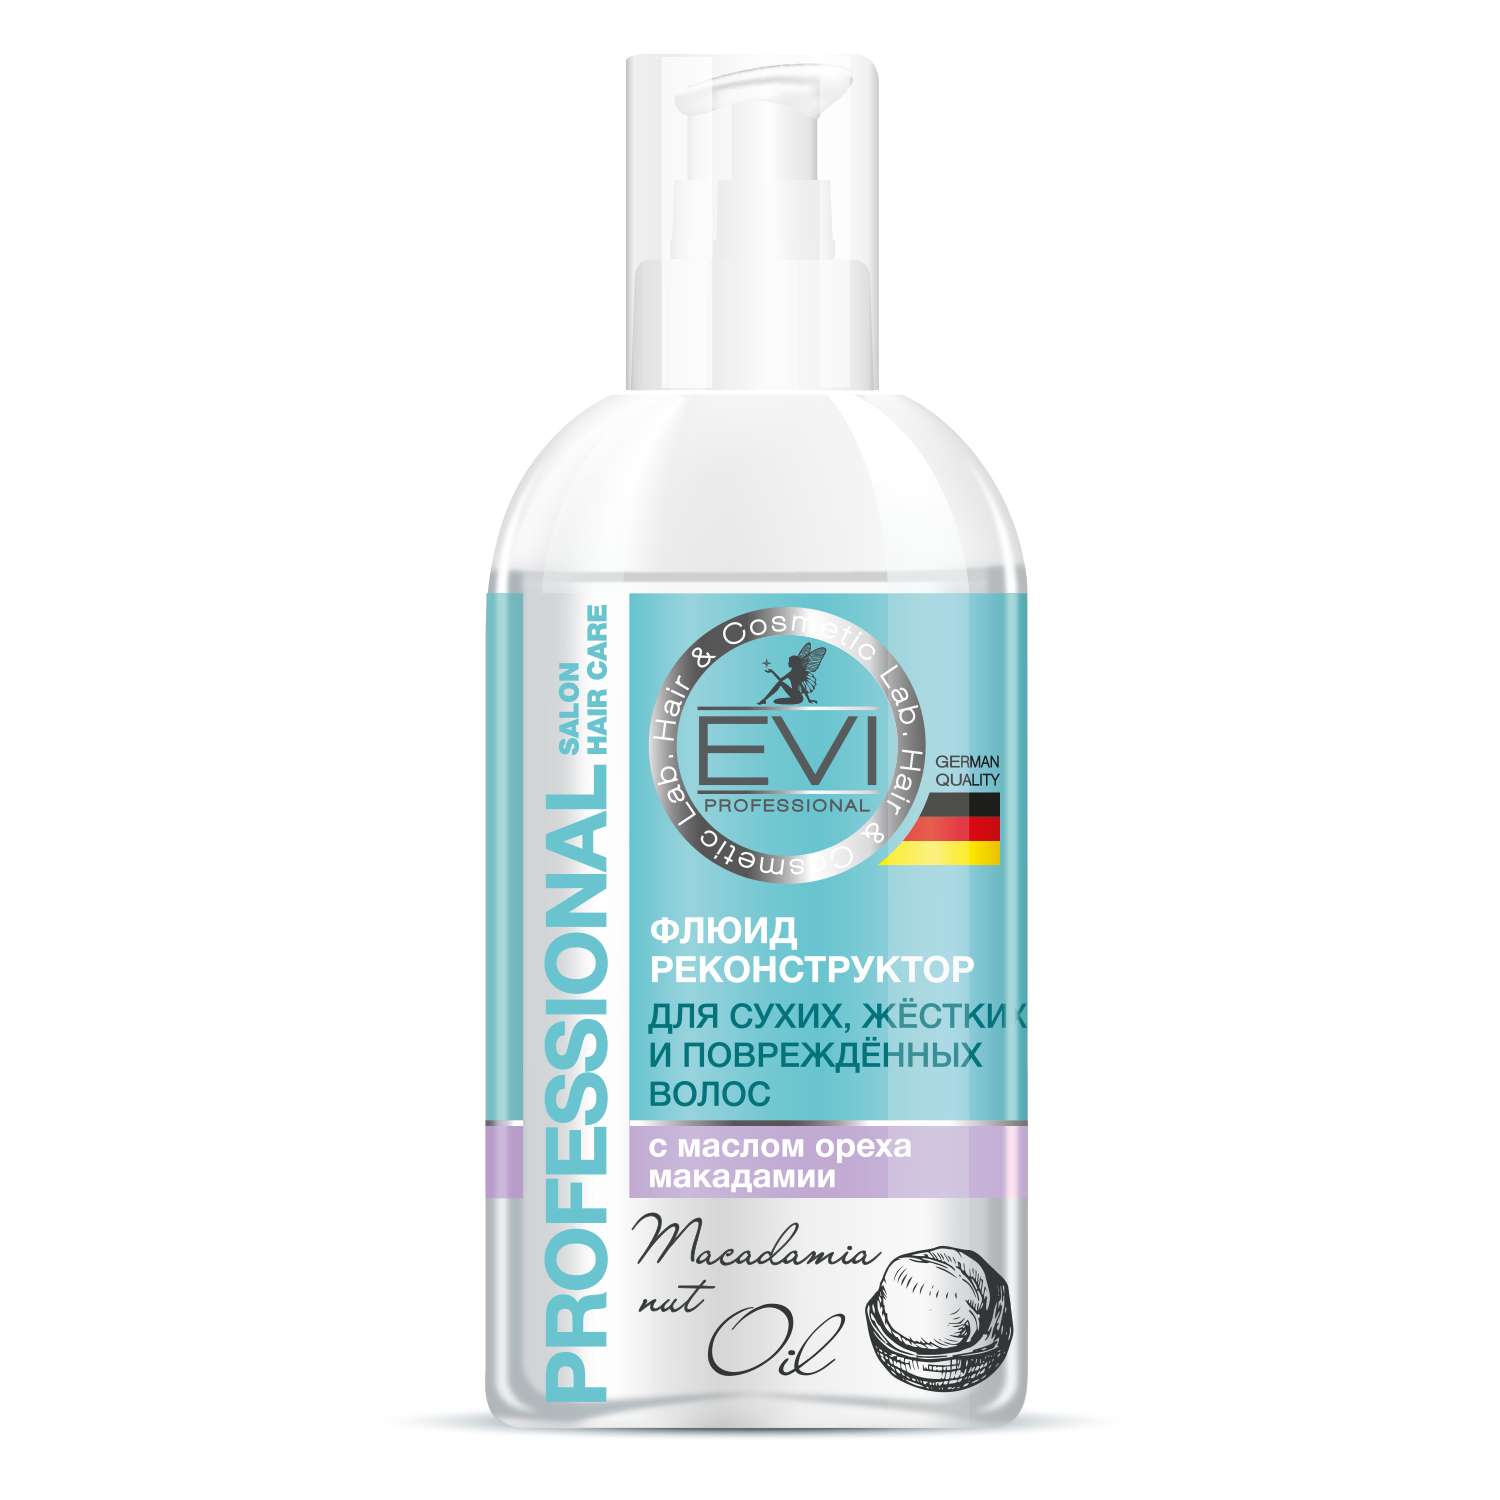 Флюид реконструктор Evi Professional с маслом ореха макадамии для сухих жёстких и повреждённых волос - фото 1